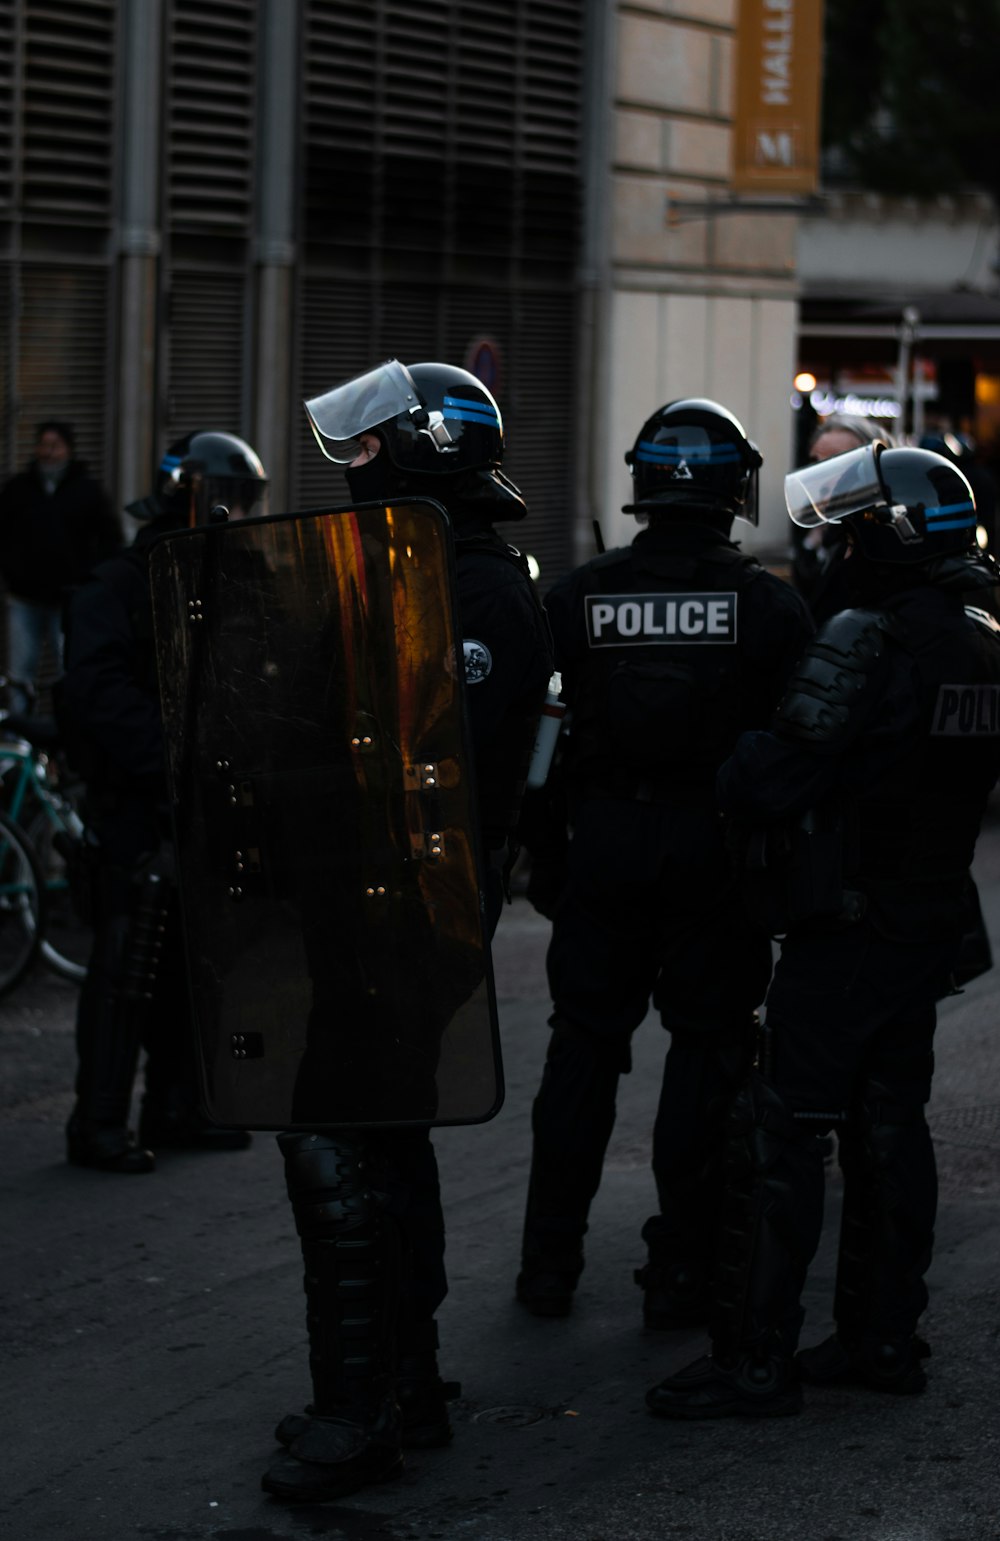 homens vestindo uniformes da polícia do lado de fora dos edifícios durante o dia